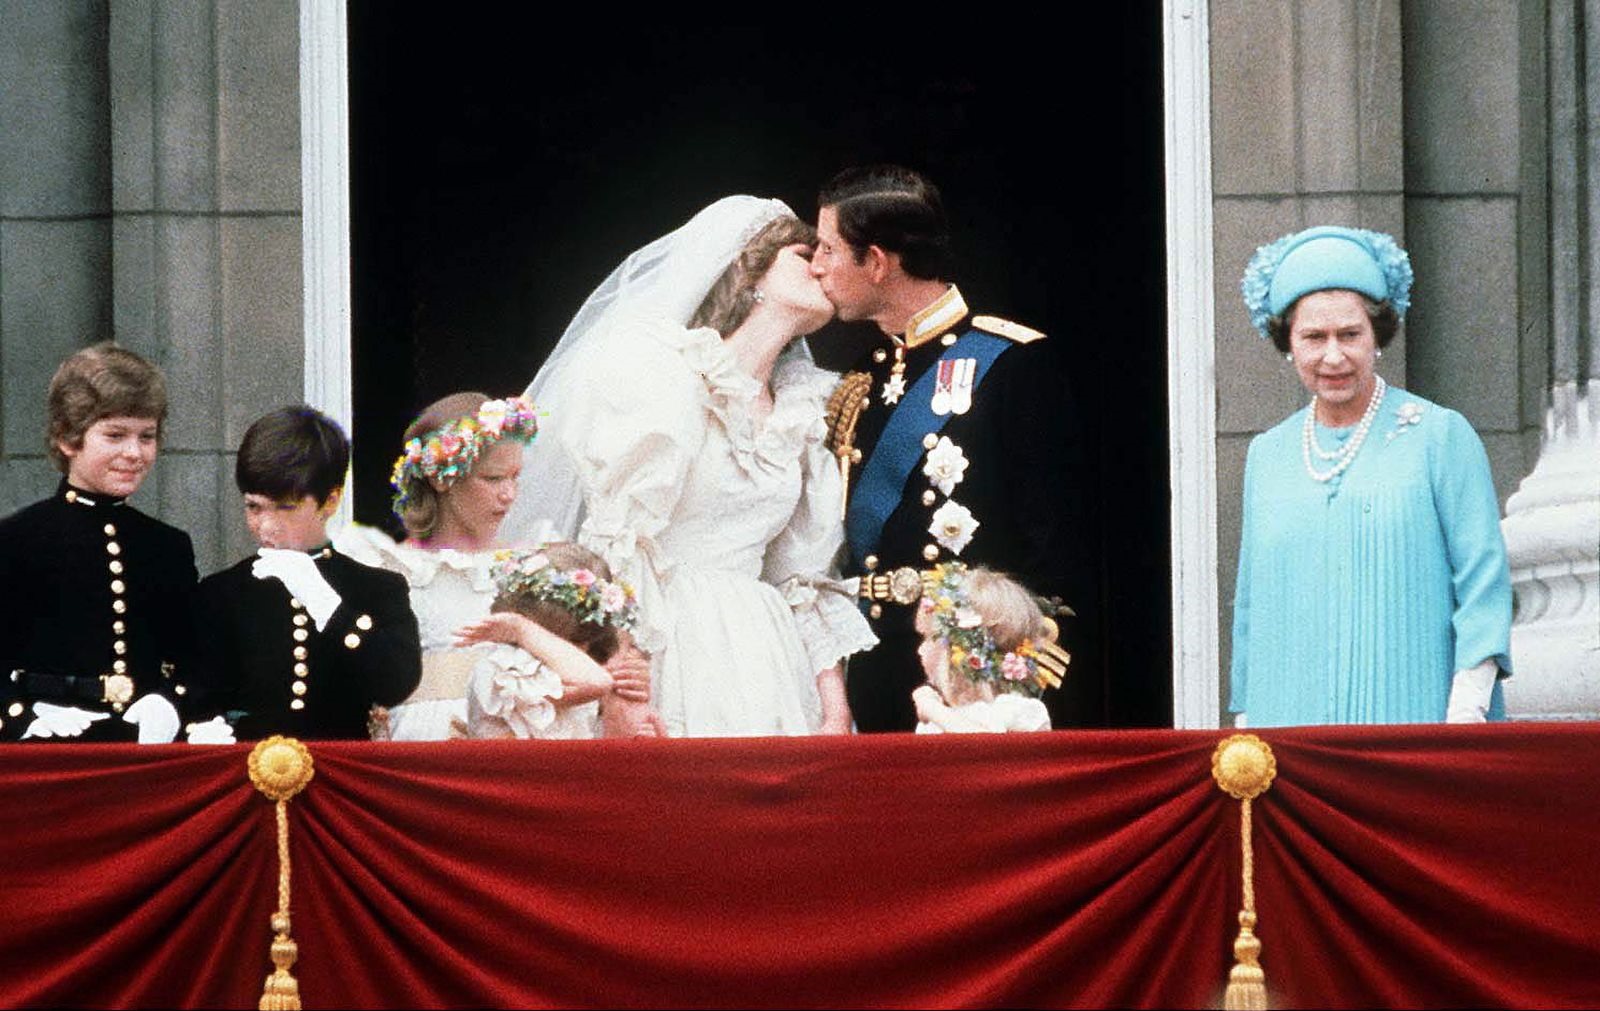 Nữ hoàng dự lễ cưới của Thái tử Charles và Công nương Diana, vào ngày 29.7.1981. Ảnh: Getty